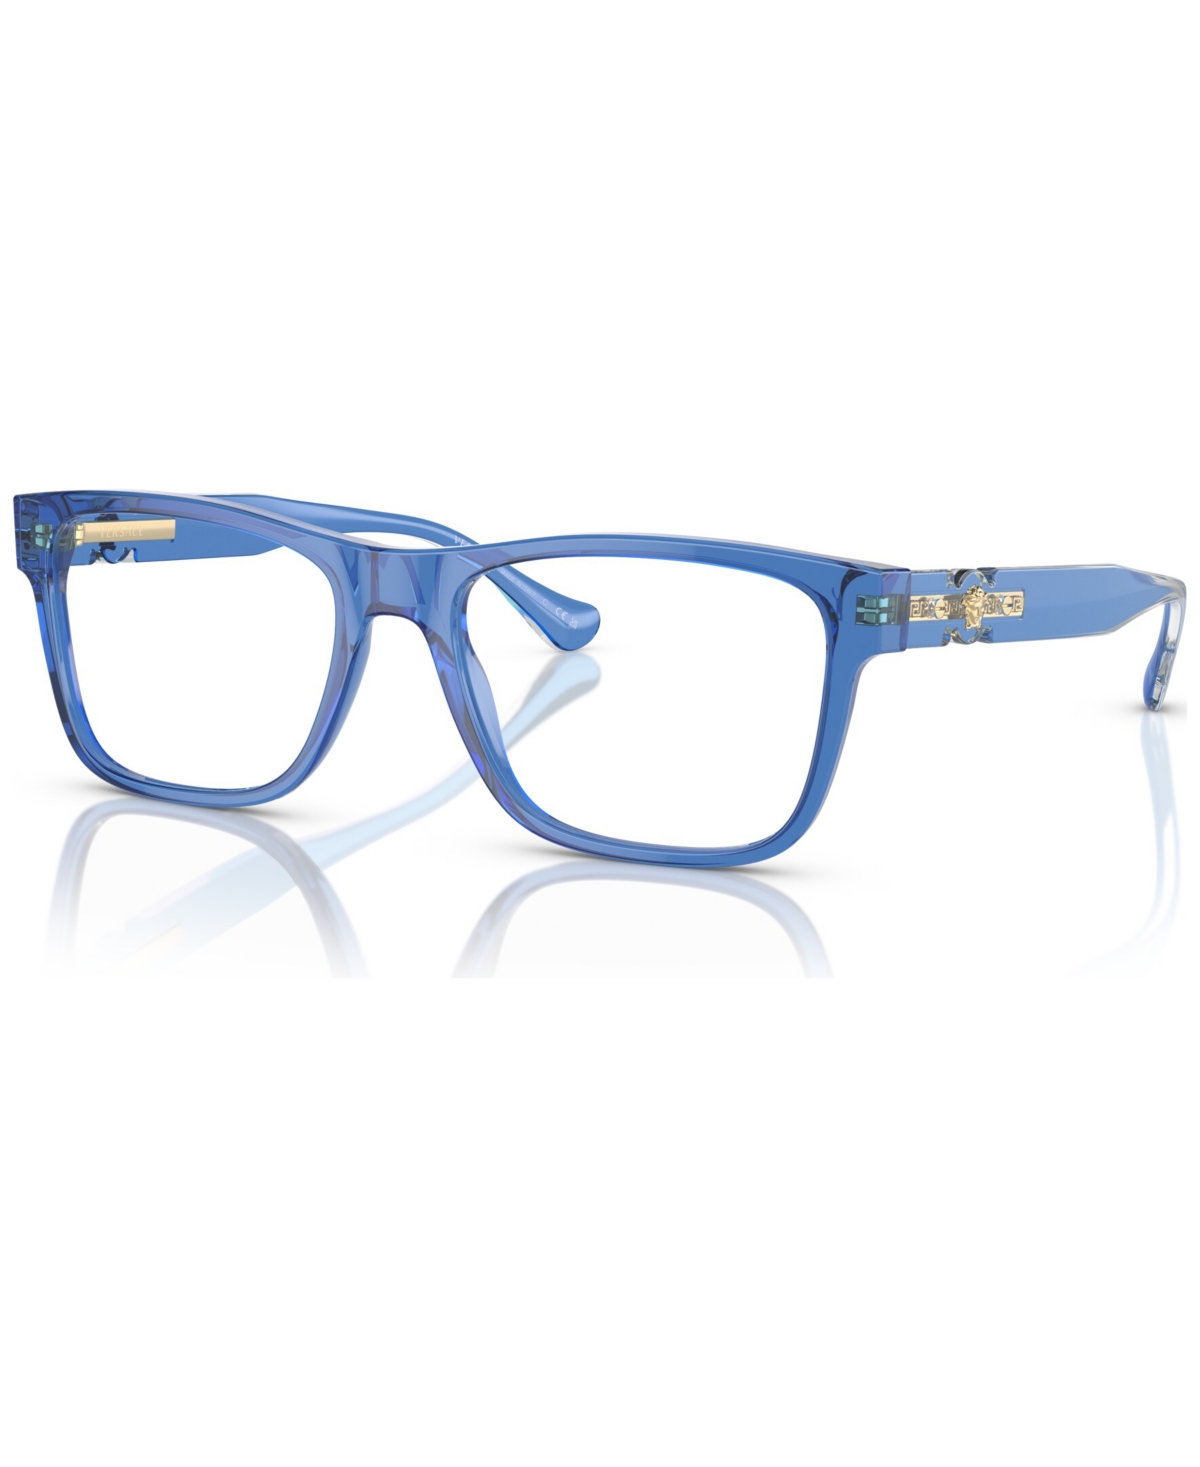 Men's Rectangle Eyeglasses, VE3303 53 - Transparent Blue